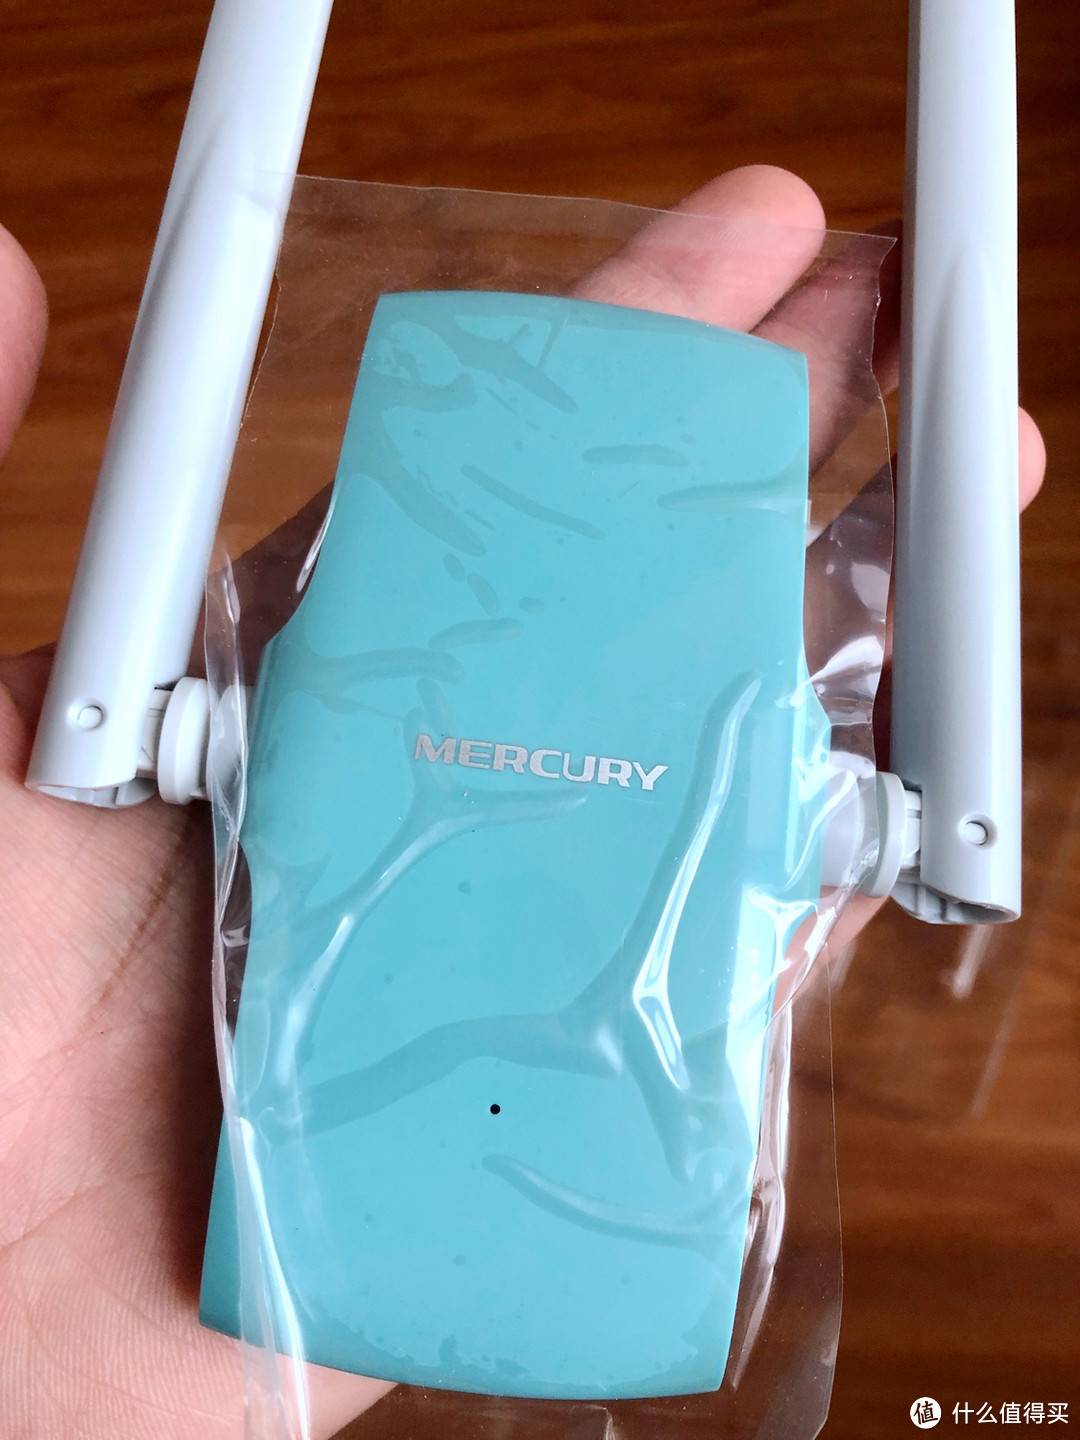 差强人意——MERCURY 水星  UD13H免驱版 1300M千兆双频USB无线网卡 开箱实测